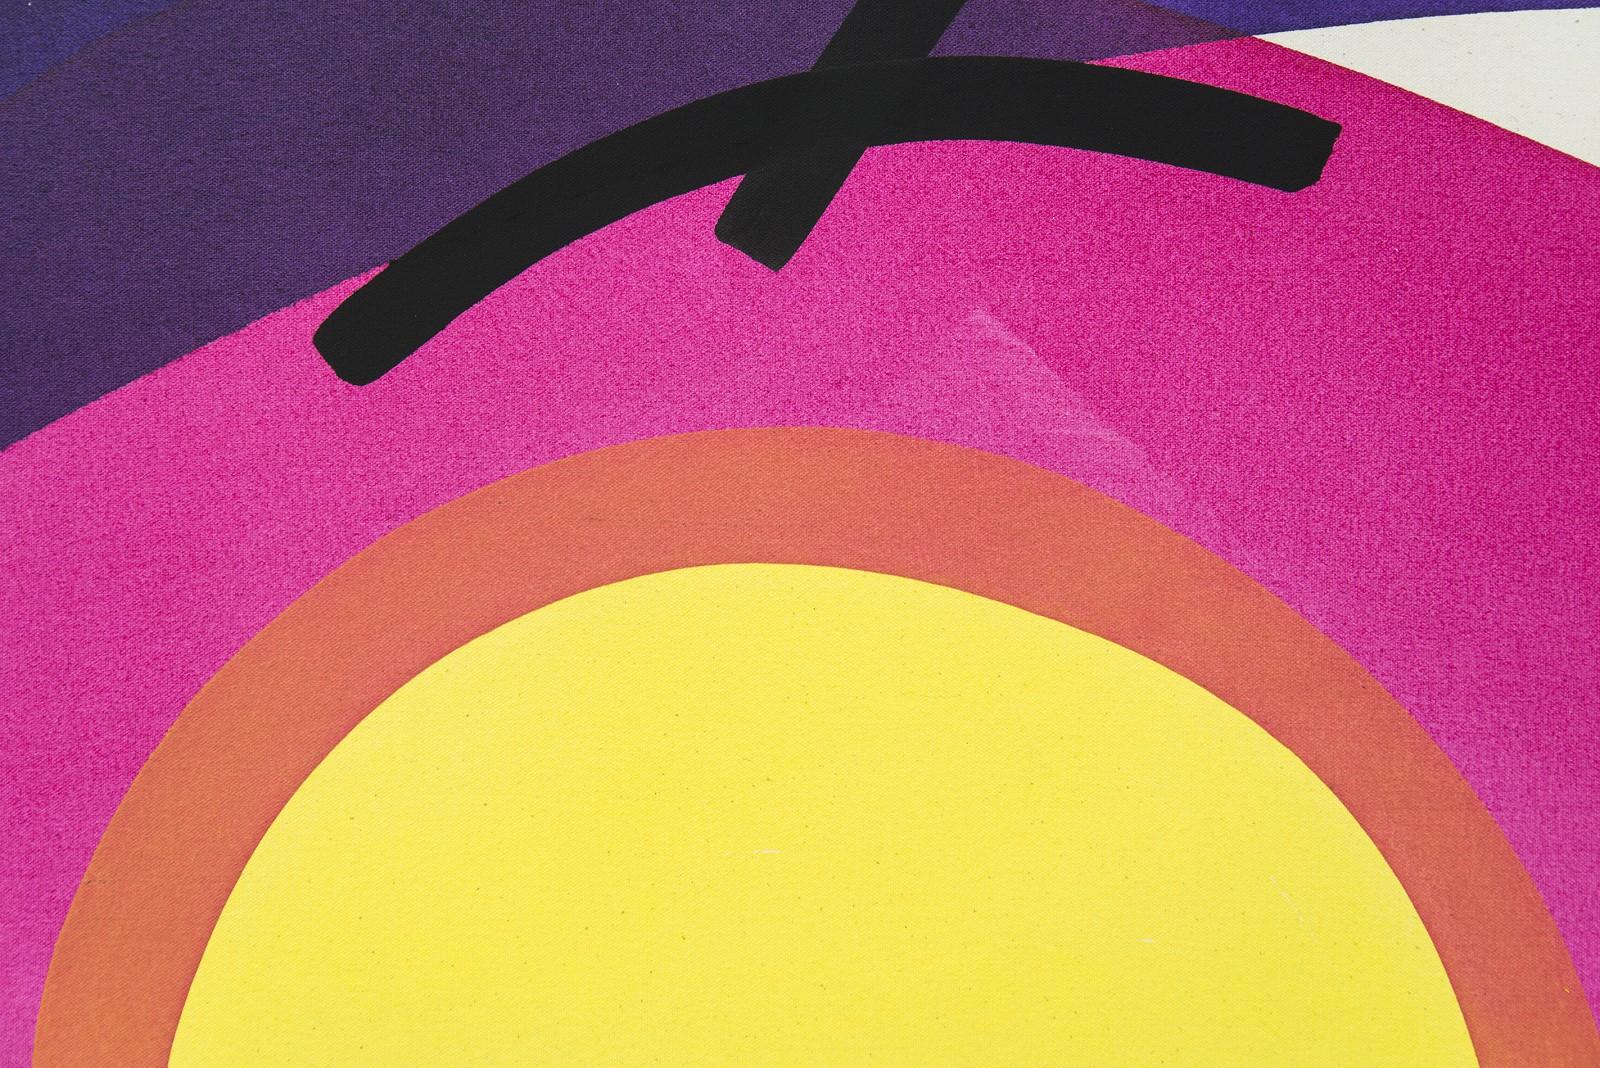 Pour l'artiste de Calgary Aron Hill, le soleil est souvent le point de mire de ses peintures minimalistes aux couleurs vives et fraîches. Cette composition en violet profond, rose vif, rouge et jaune vif fait partie d'une série de nouvelles œuvres